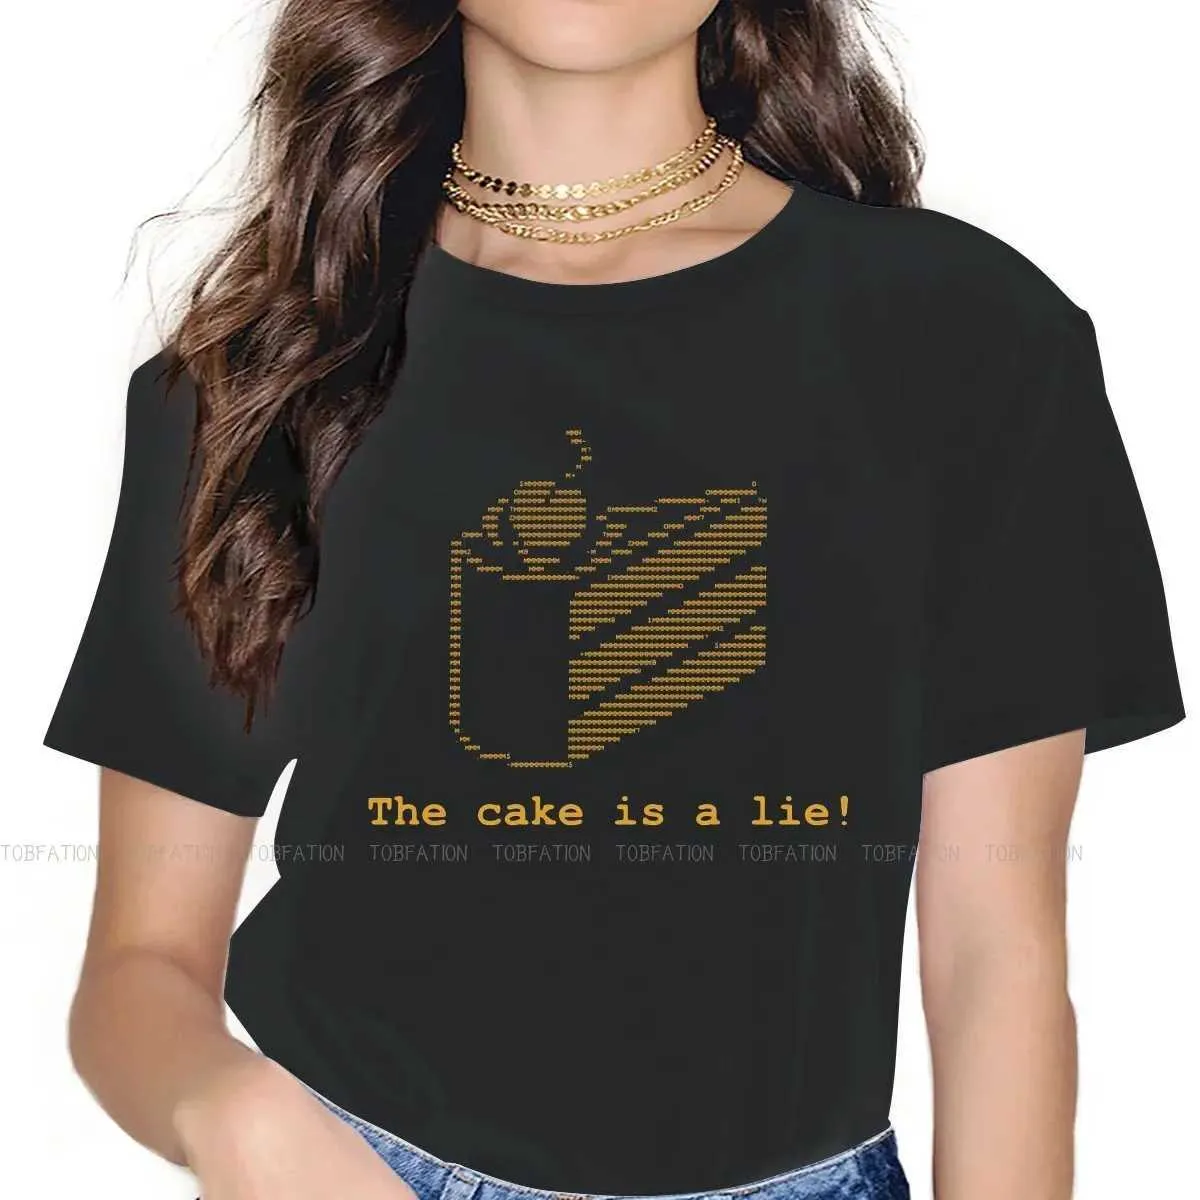 Женская футболка торт-это код лжи для женских футболок, чек, атлас p-body o nece top 5xl Женская футболка Fusy Fashion lift2405